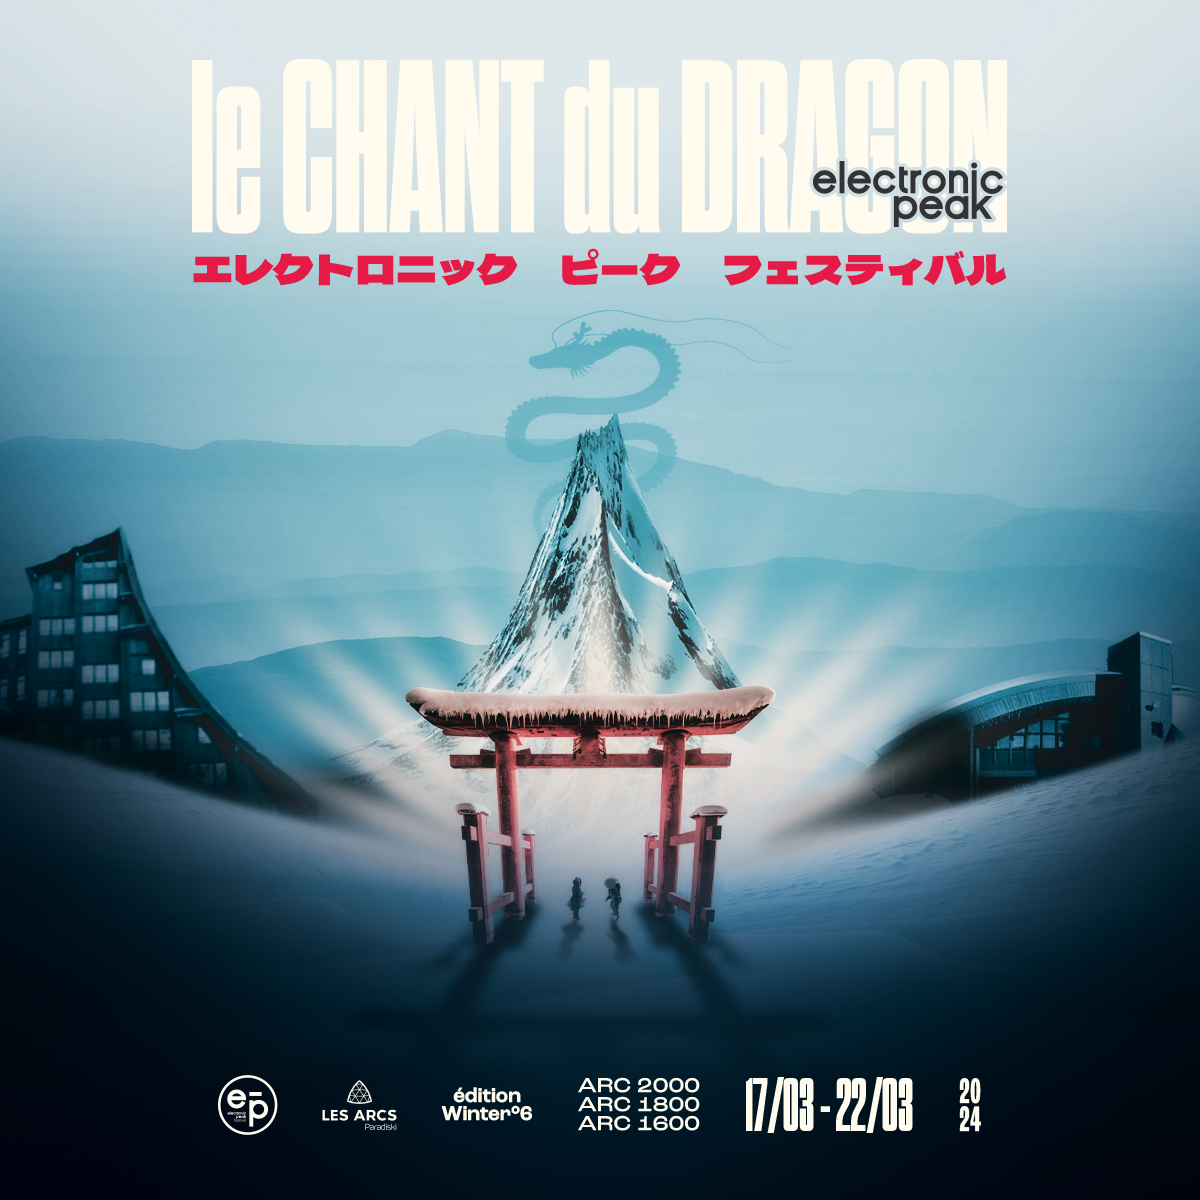 Electronic Peak Festival Les Arcs #6 - Le Chant du Dragon - フライヤー表